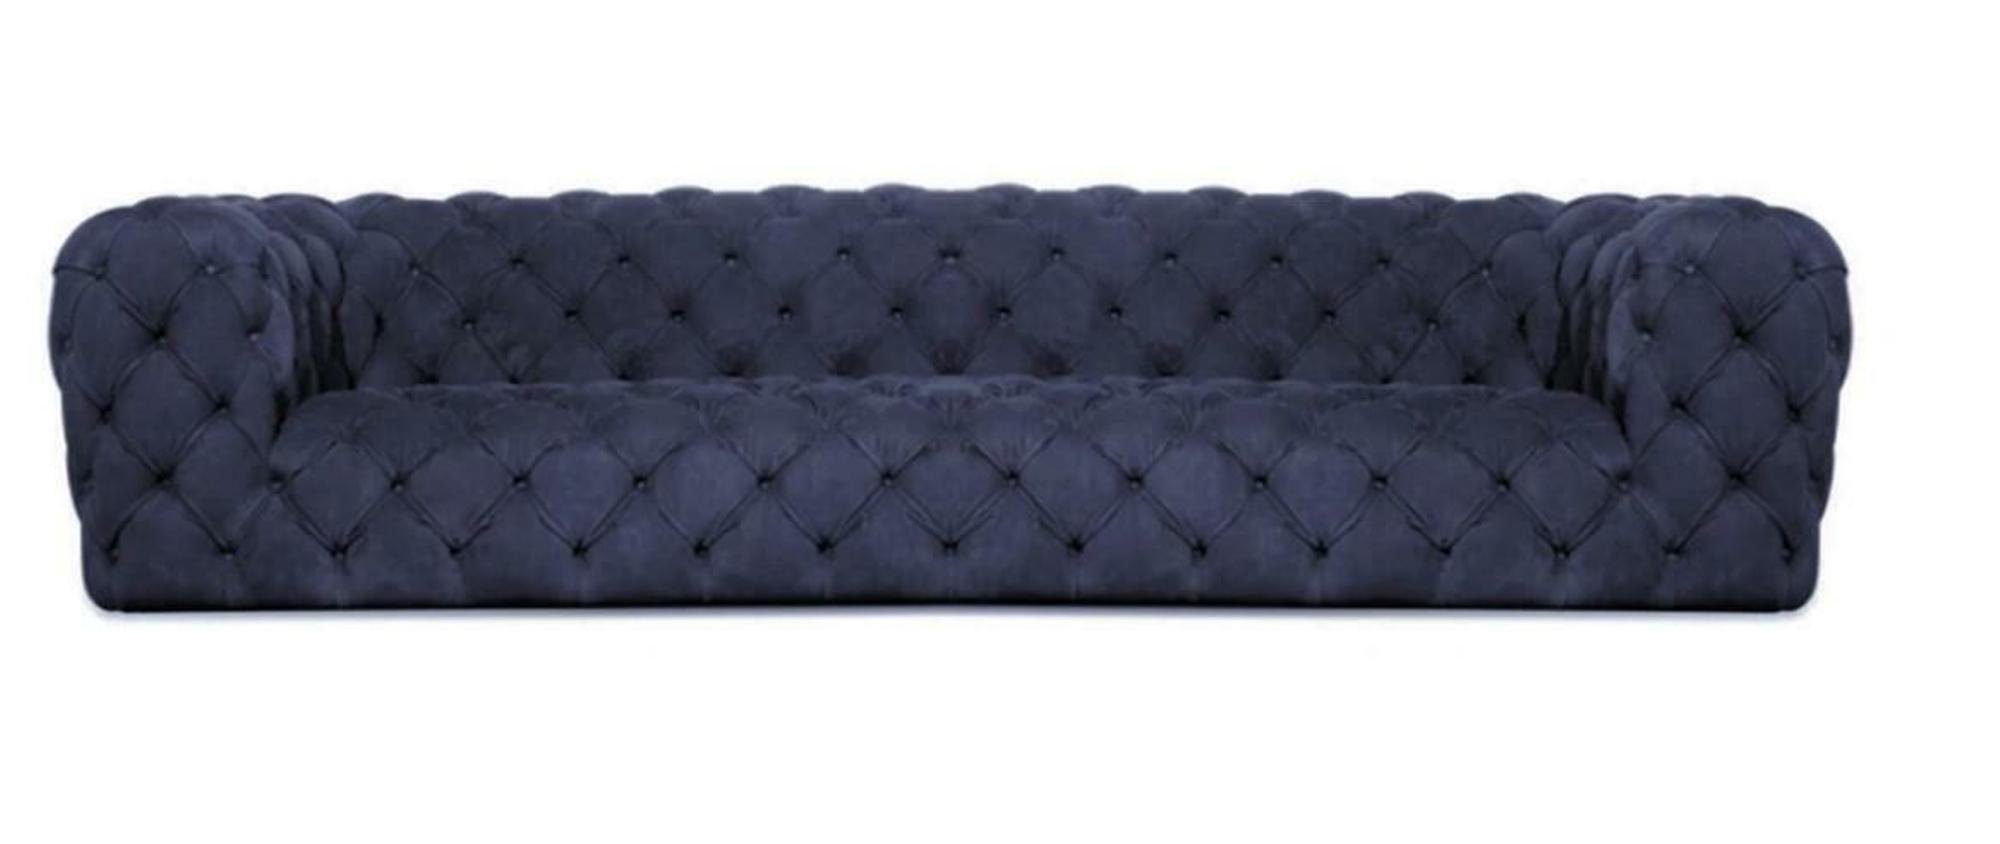 JVmoebel Wohnzimmer Stoff Chesterfield Couchen Möbel Blau Chesterfield-Sofa, Design Modern Grau Sofa